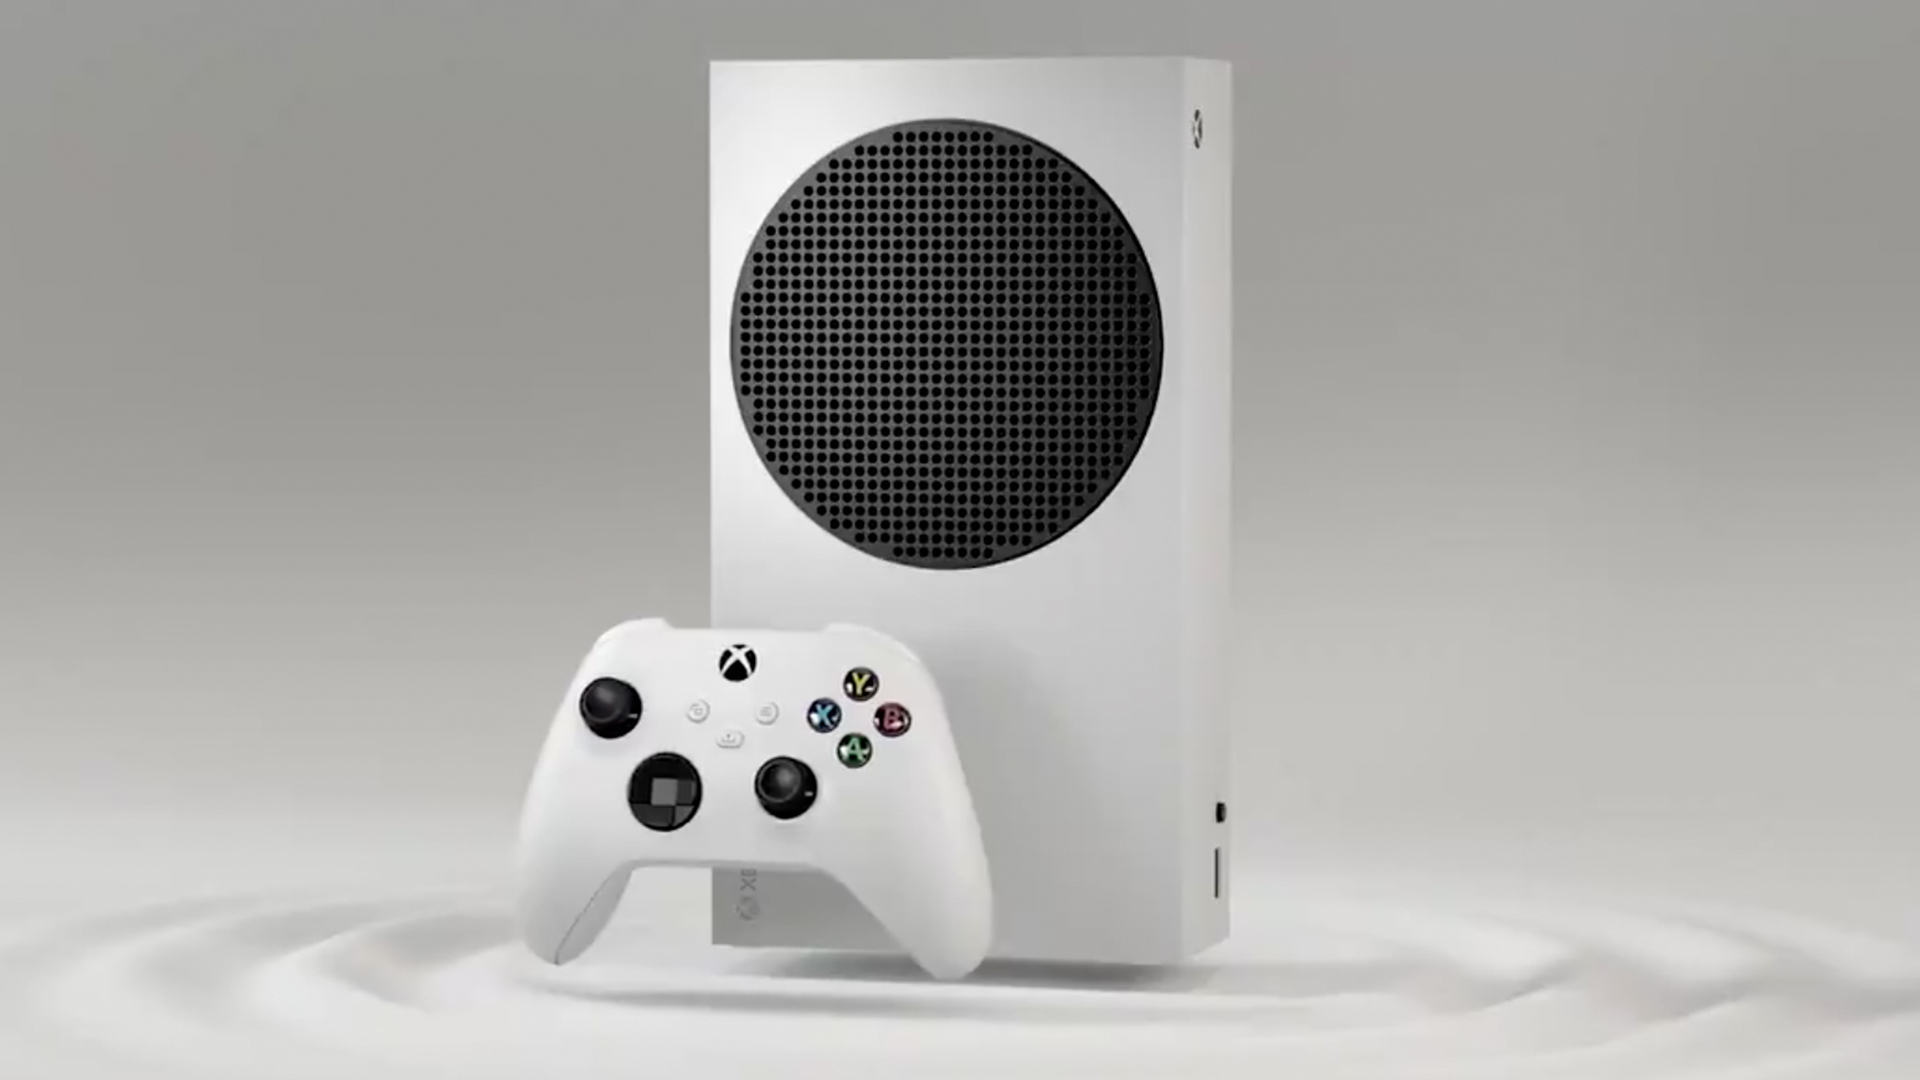 jöle yorumu apse  Xbox Series S: Everything you need to know | GamesRadar+